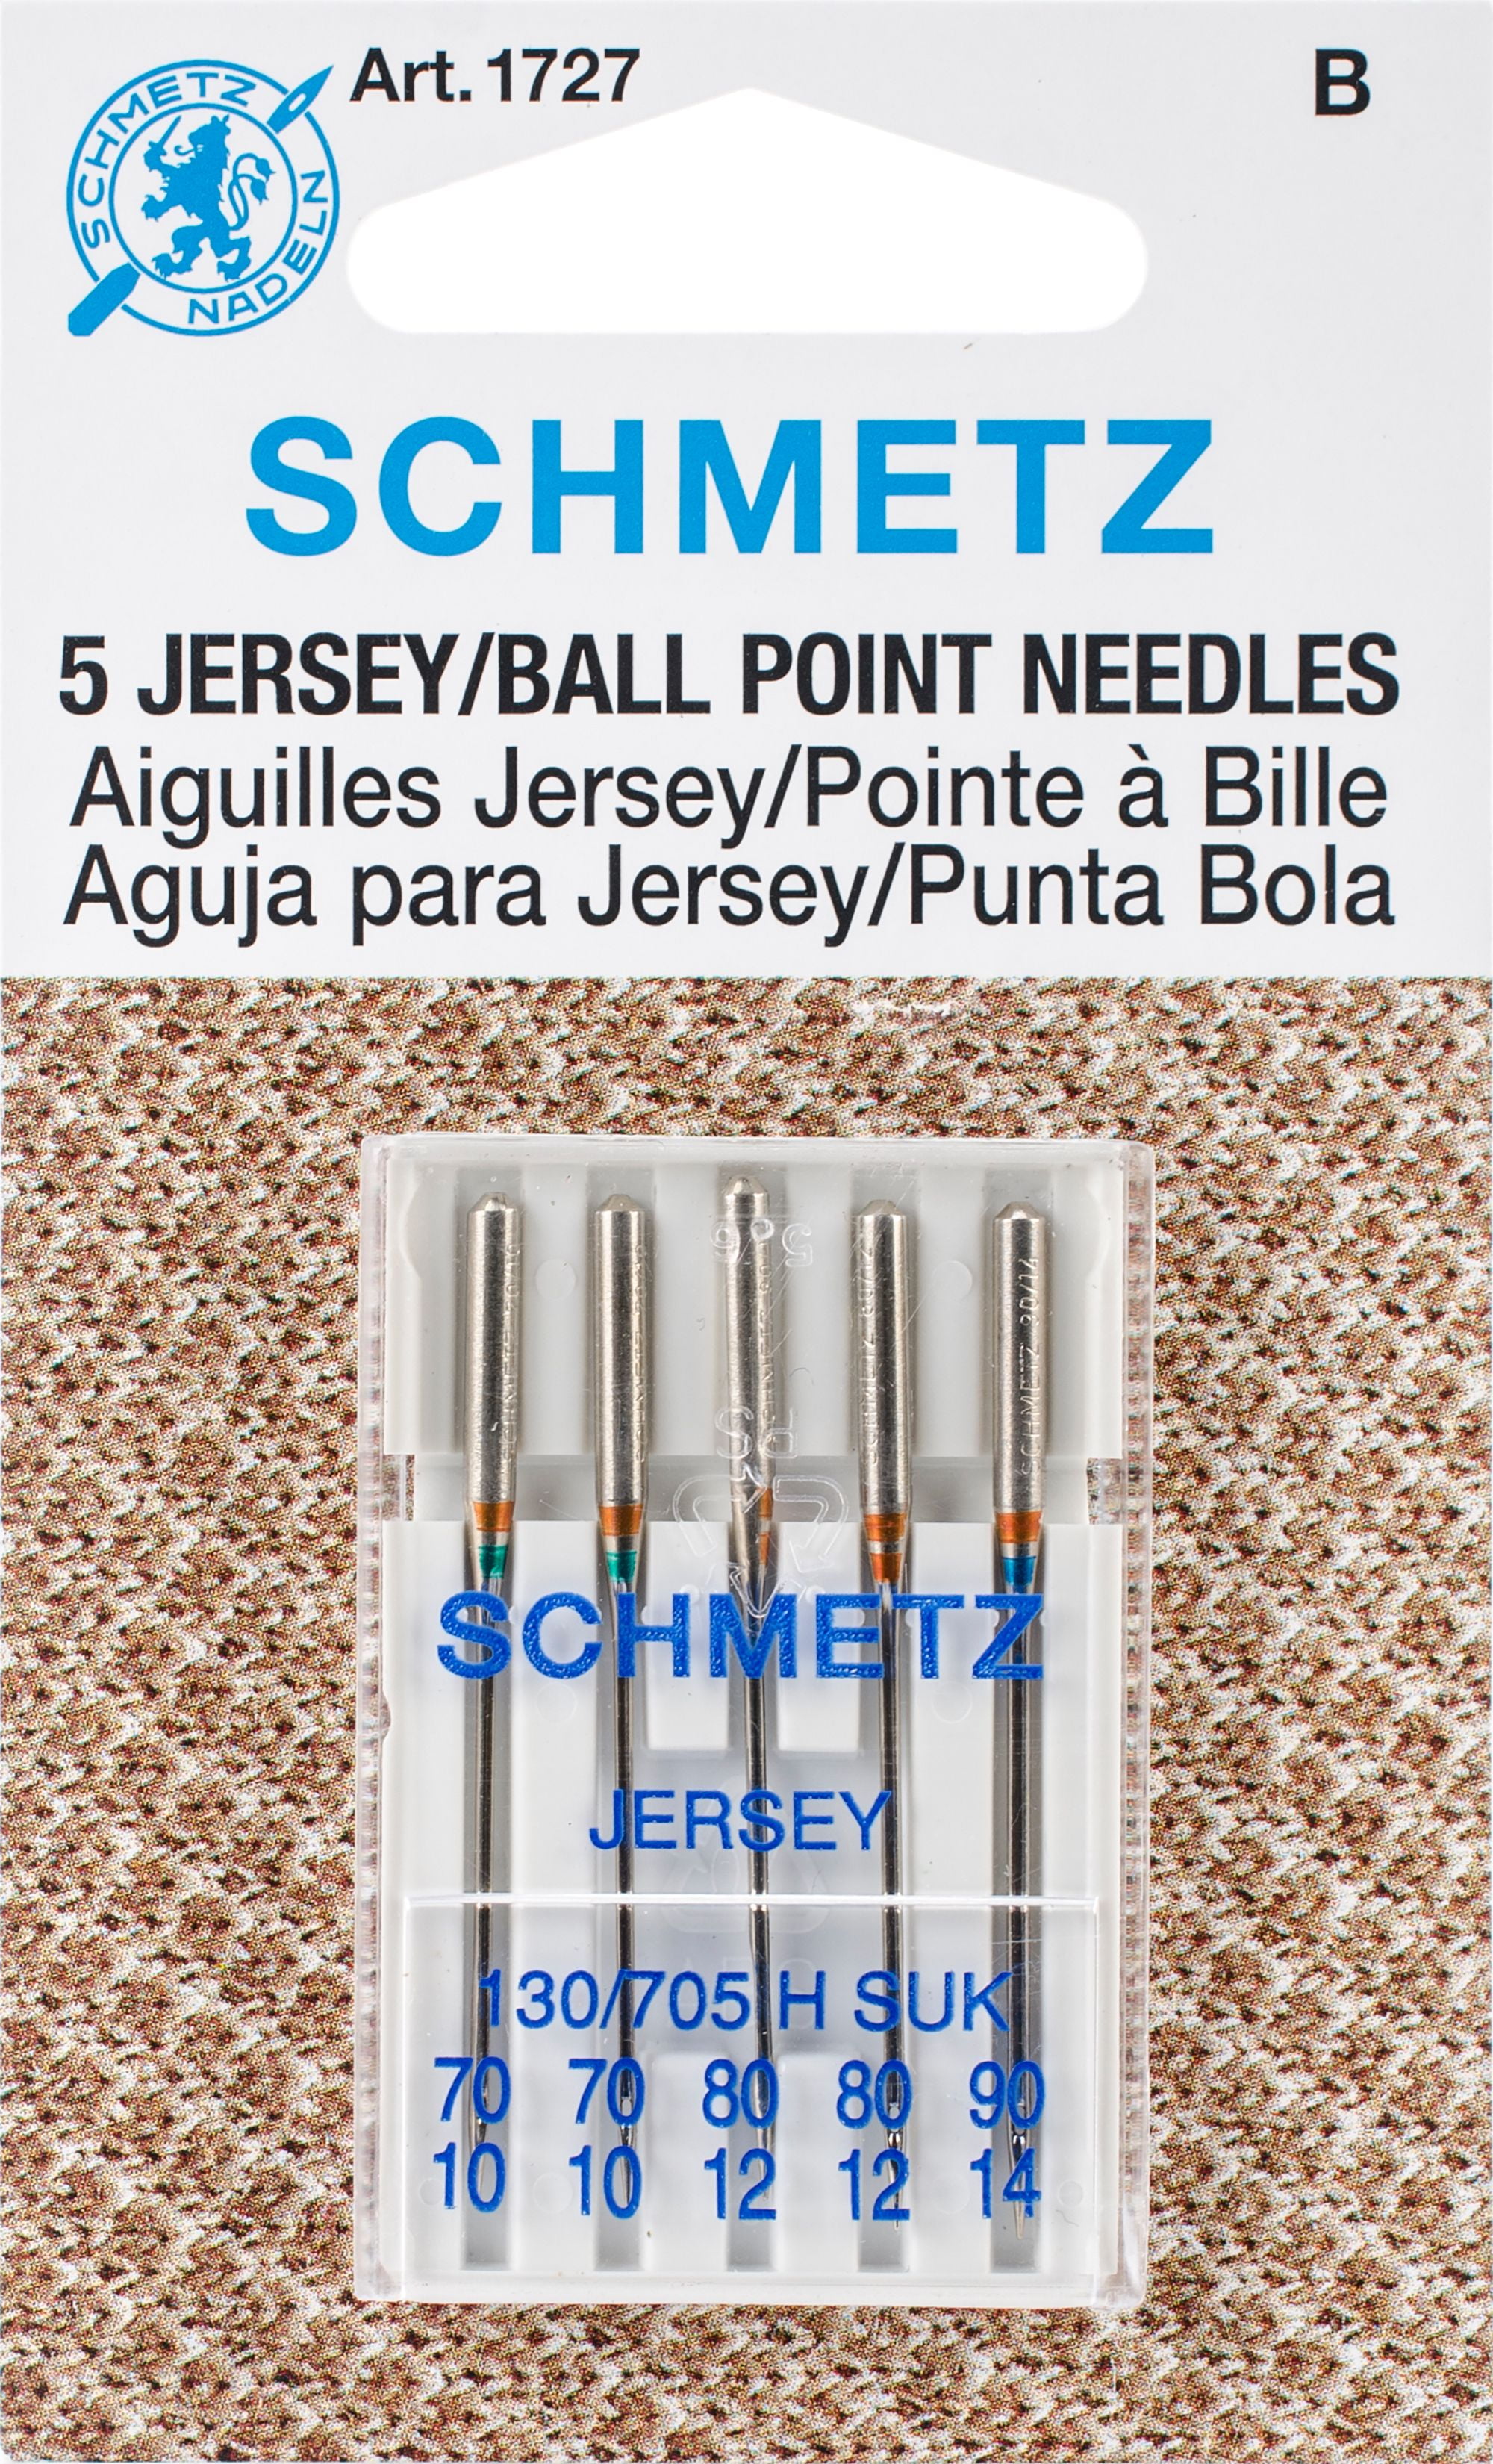 5 pieces by Schmetz SCHMETZ Sewing Machine needles JERSEY 130/705 H-SUK NM 80/12 